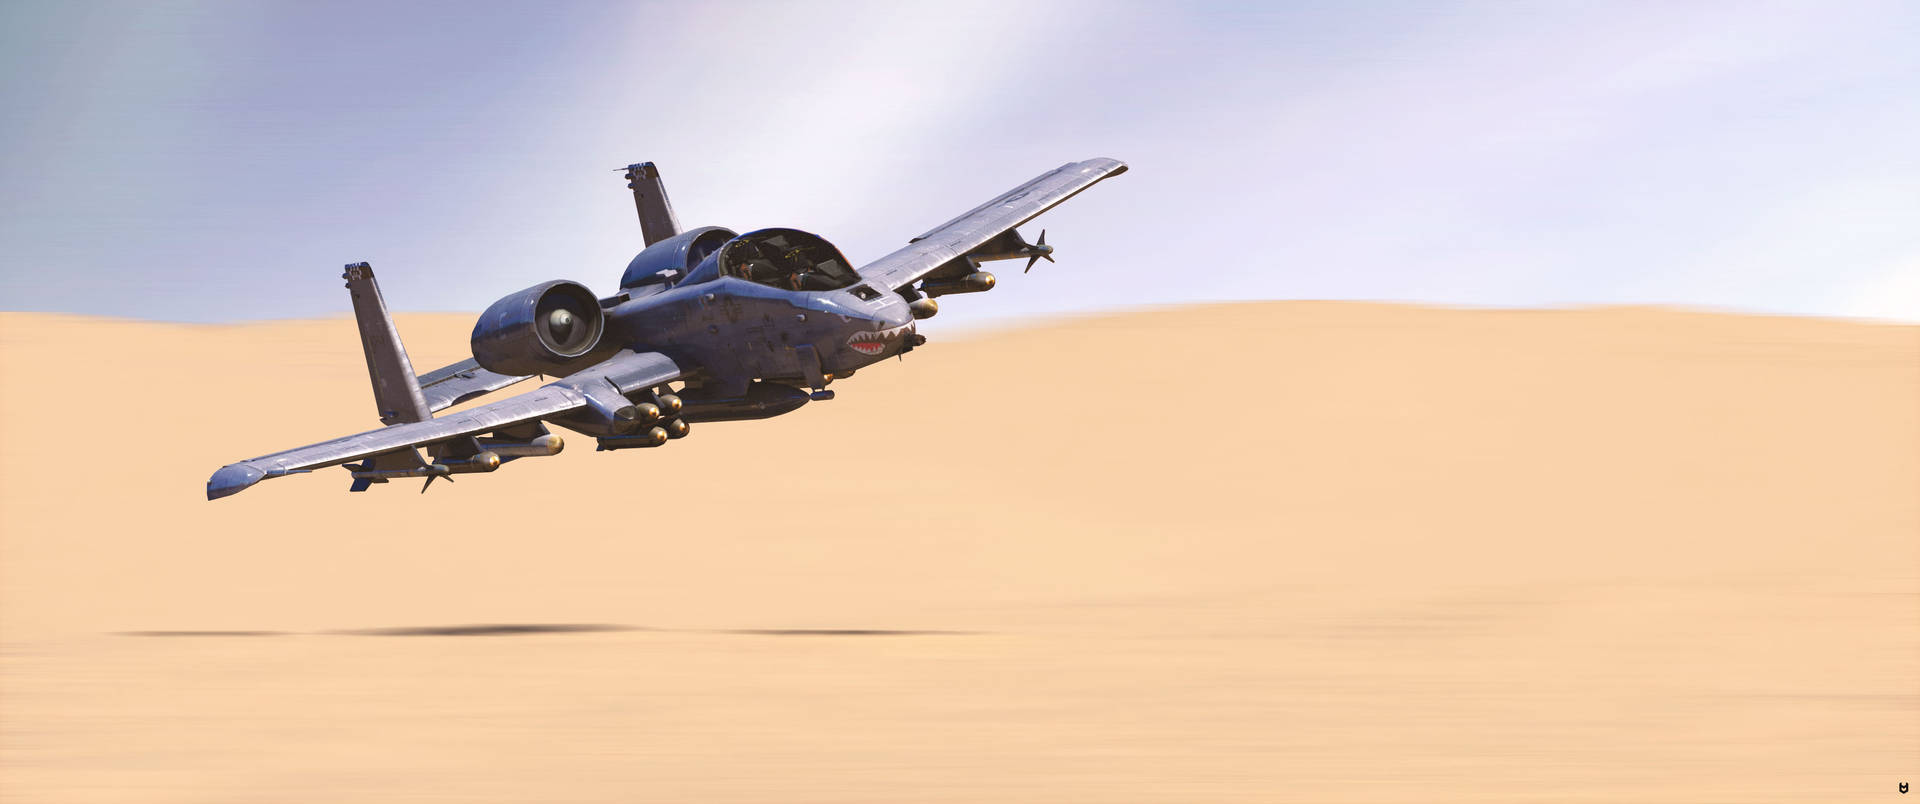 Jet Fighter In The Desert